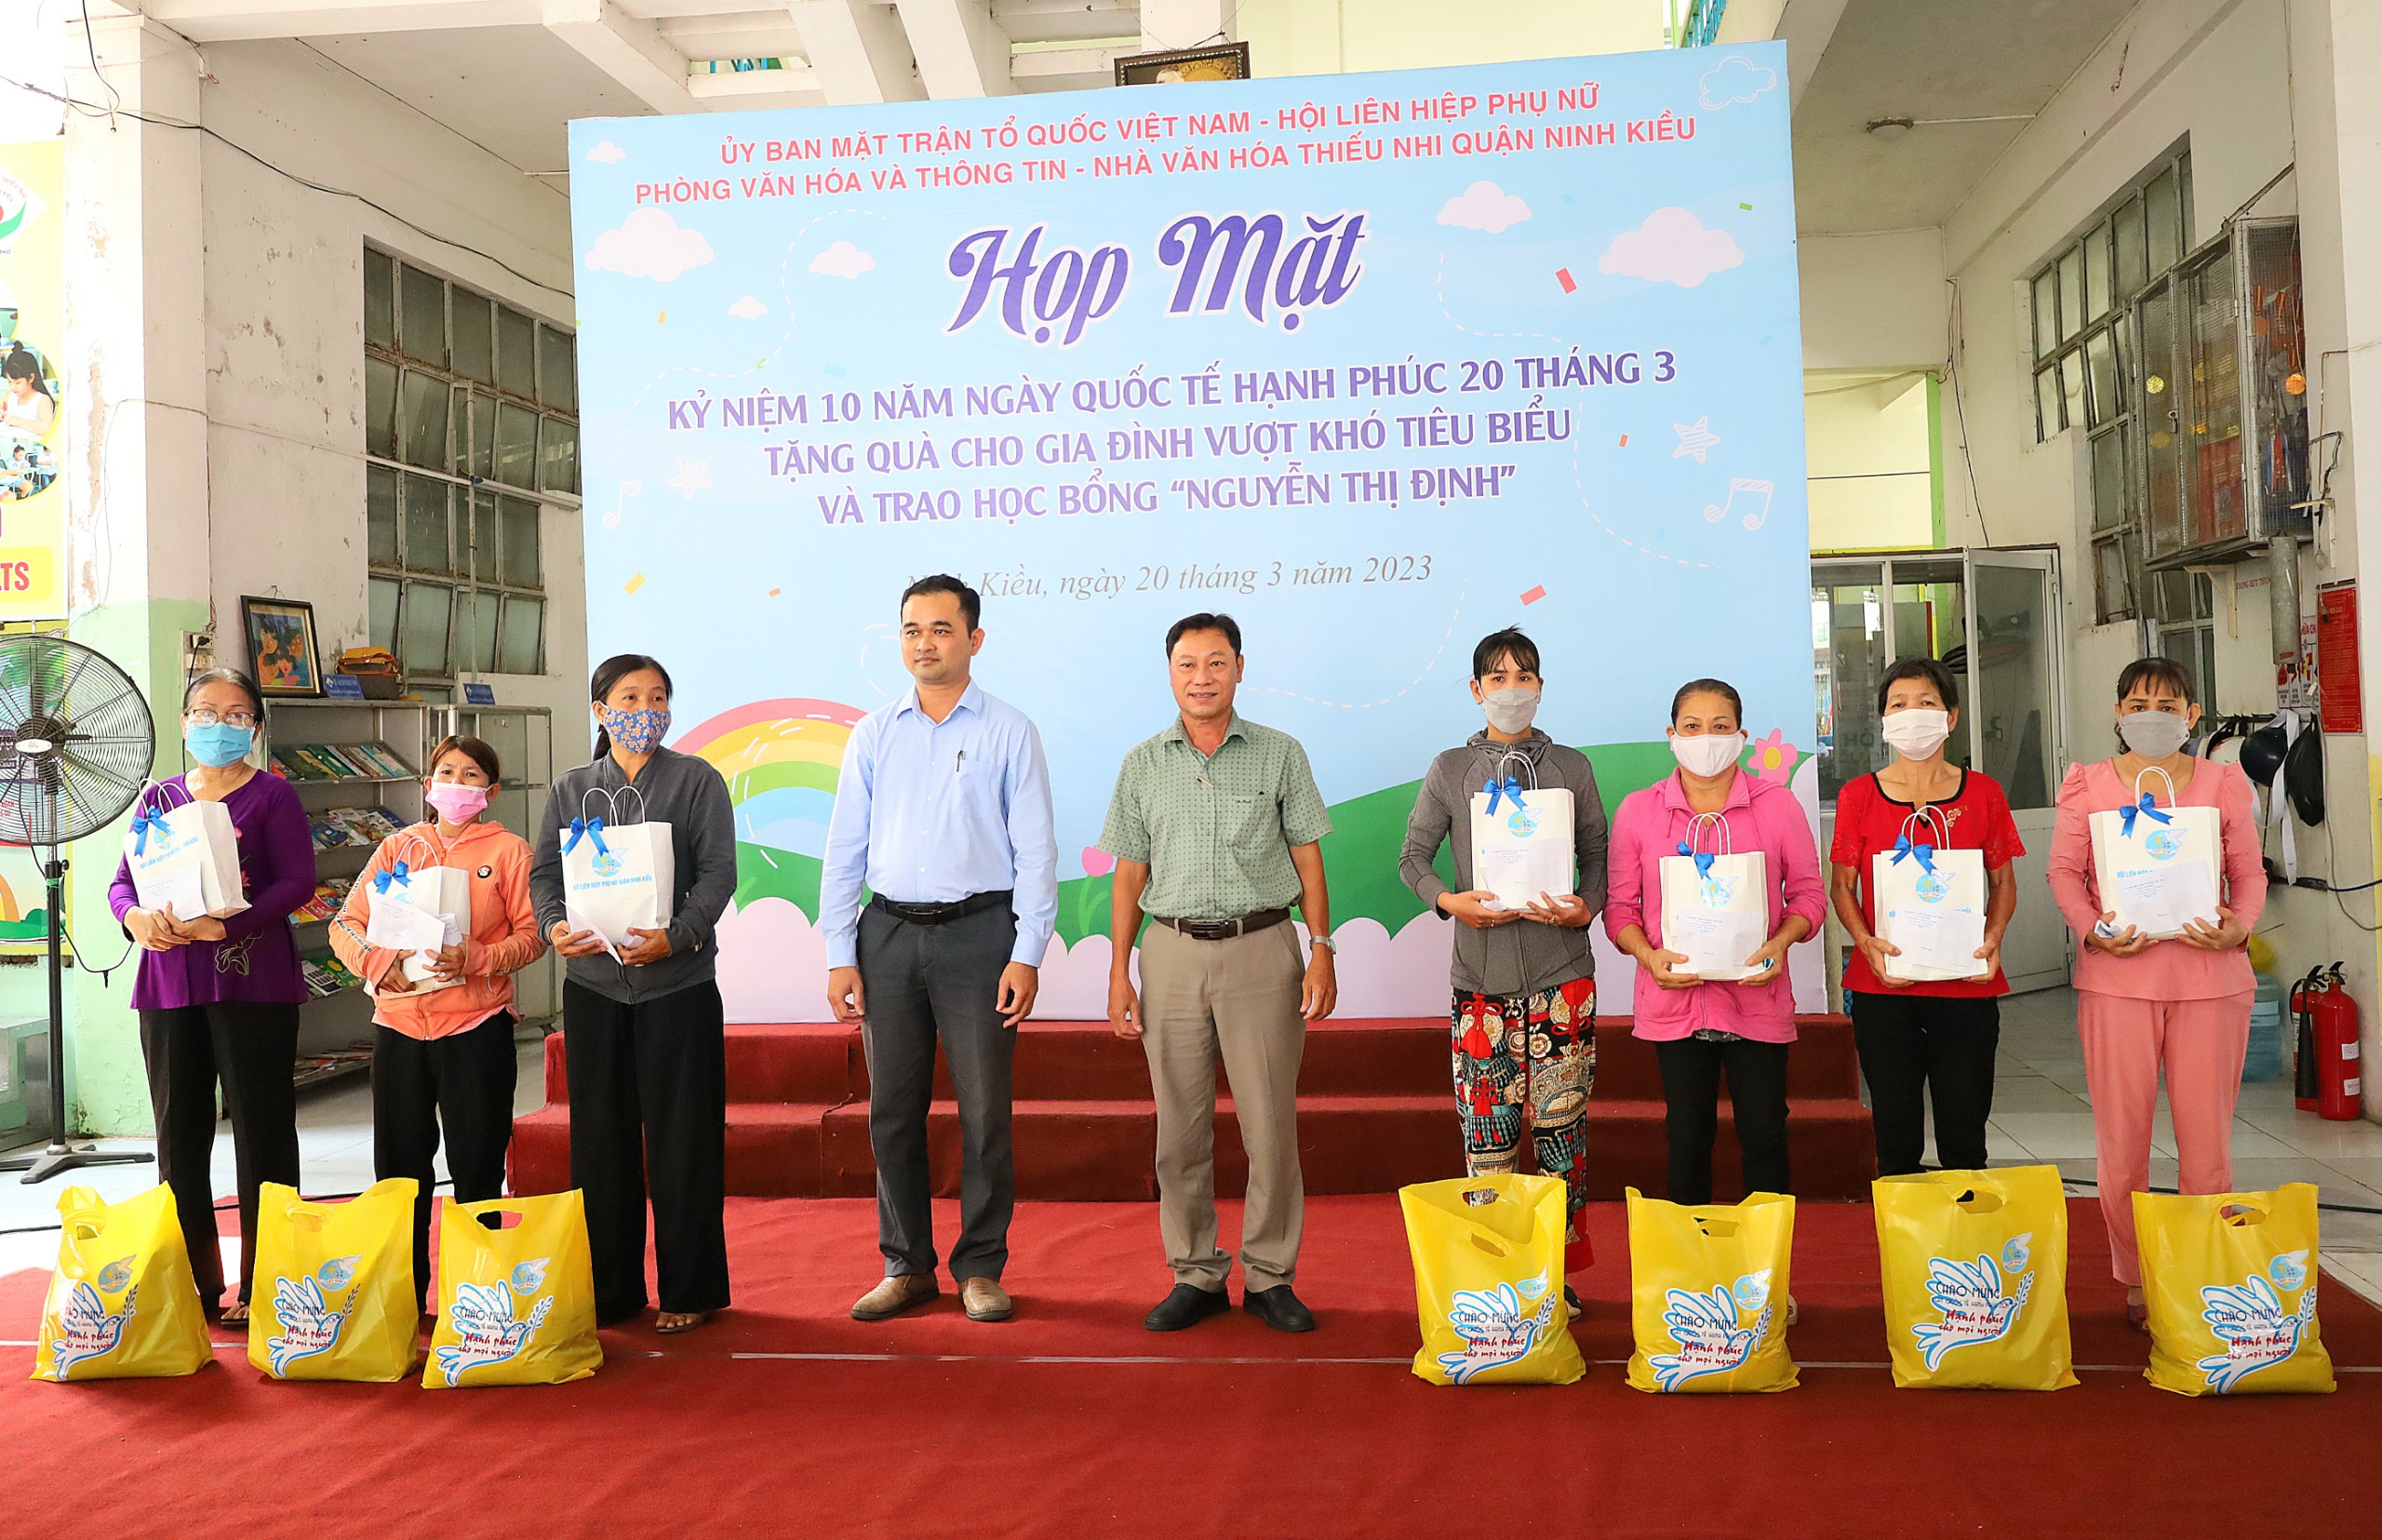 Ông Lê Văn Hùng - UV thường trực UB MTTQVN quận Ninh Kiều và ông Trần Quốc Thành - Trưởng Phòng Văn hóa và Thông tin quận Ninh Kiều trao tặng quà cho các gia đình.